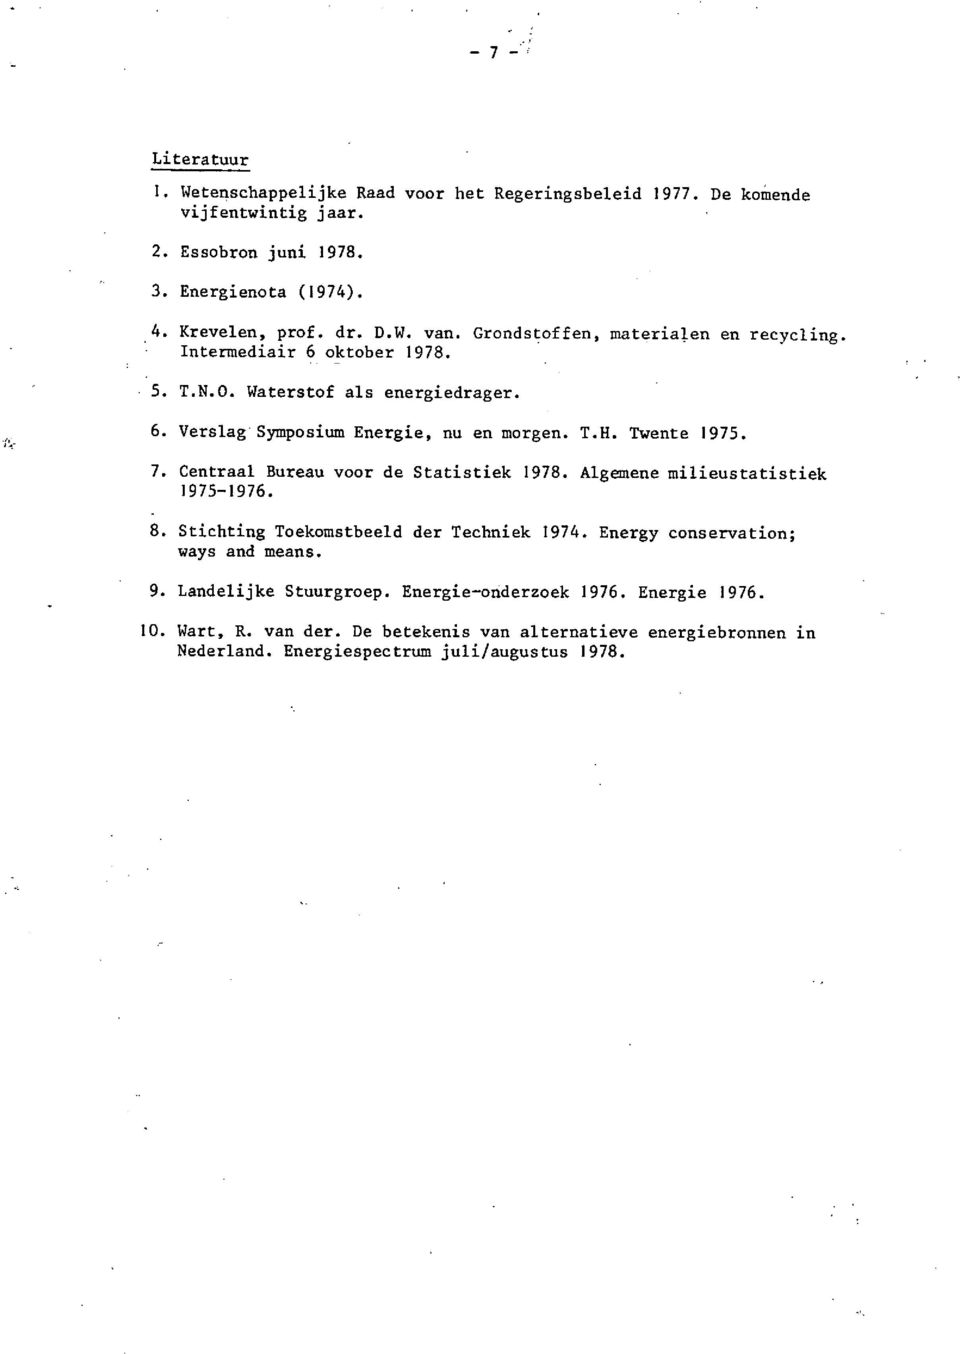 7. Centraal Bureau 1975-1976. voor Statistiek Algemene milieustatistiek 8. Stichting Toekomstbeeld der Techniek 1974. Energy conservation; ways and means. 9.